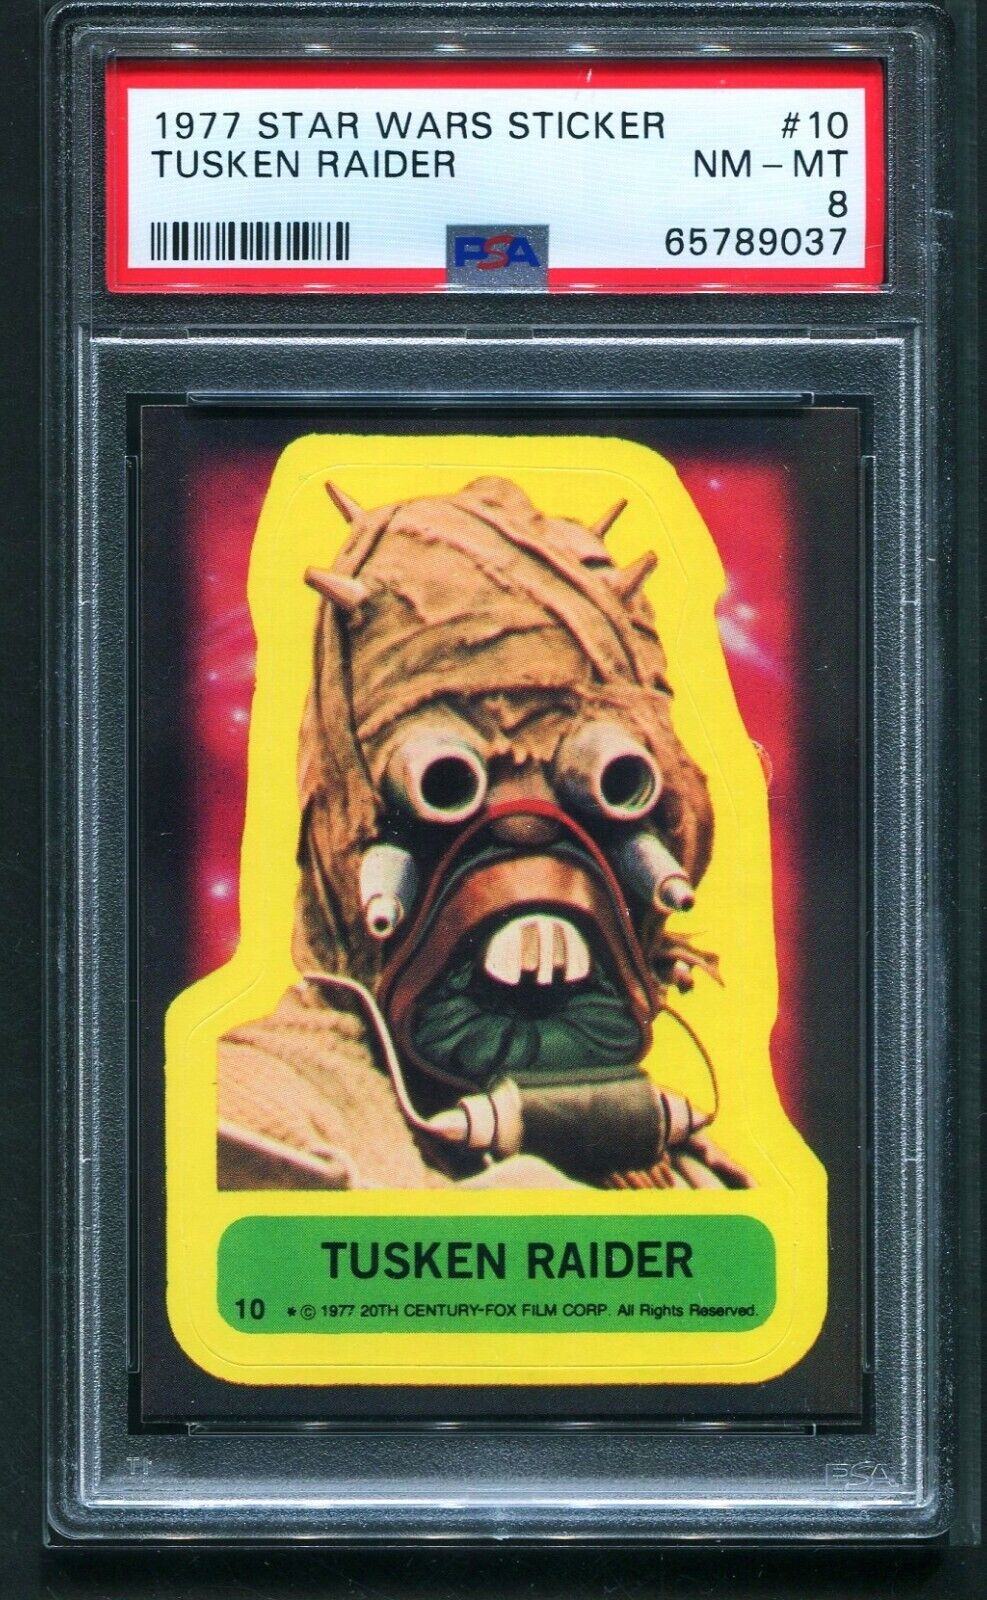 1977 Star Wars Sticker Series 1 #10 TUSKEN RAIDER PSA 8 NM-MT